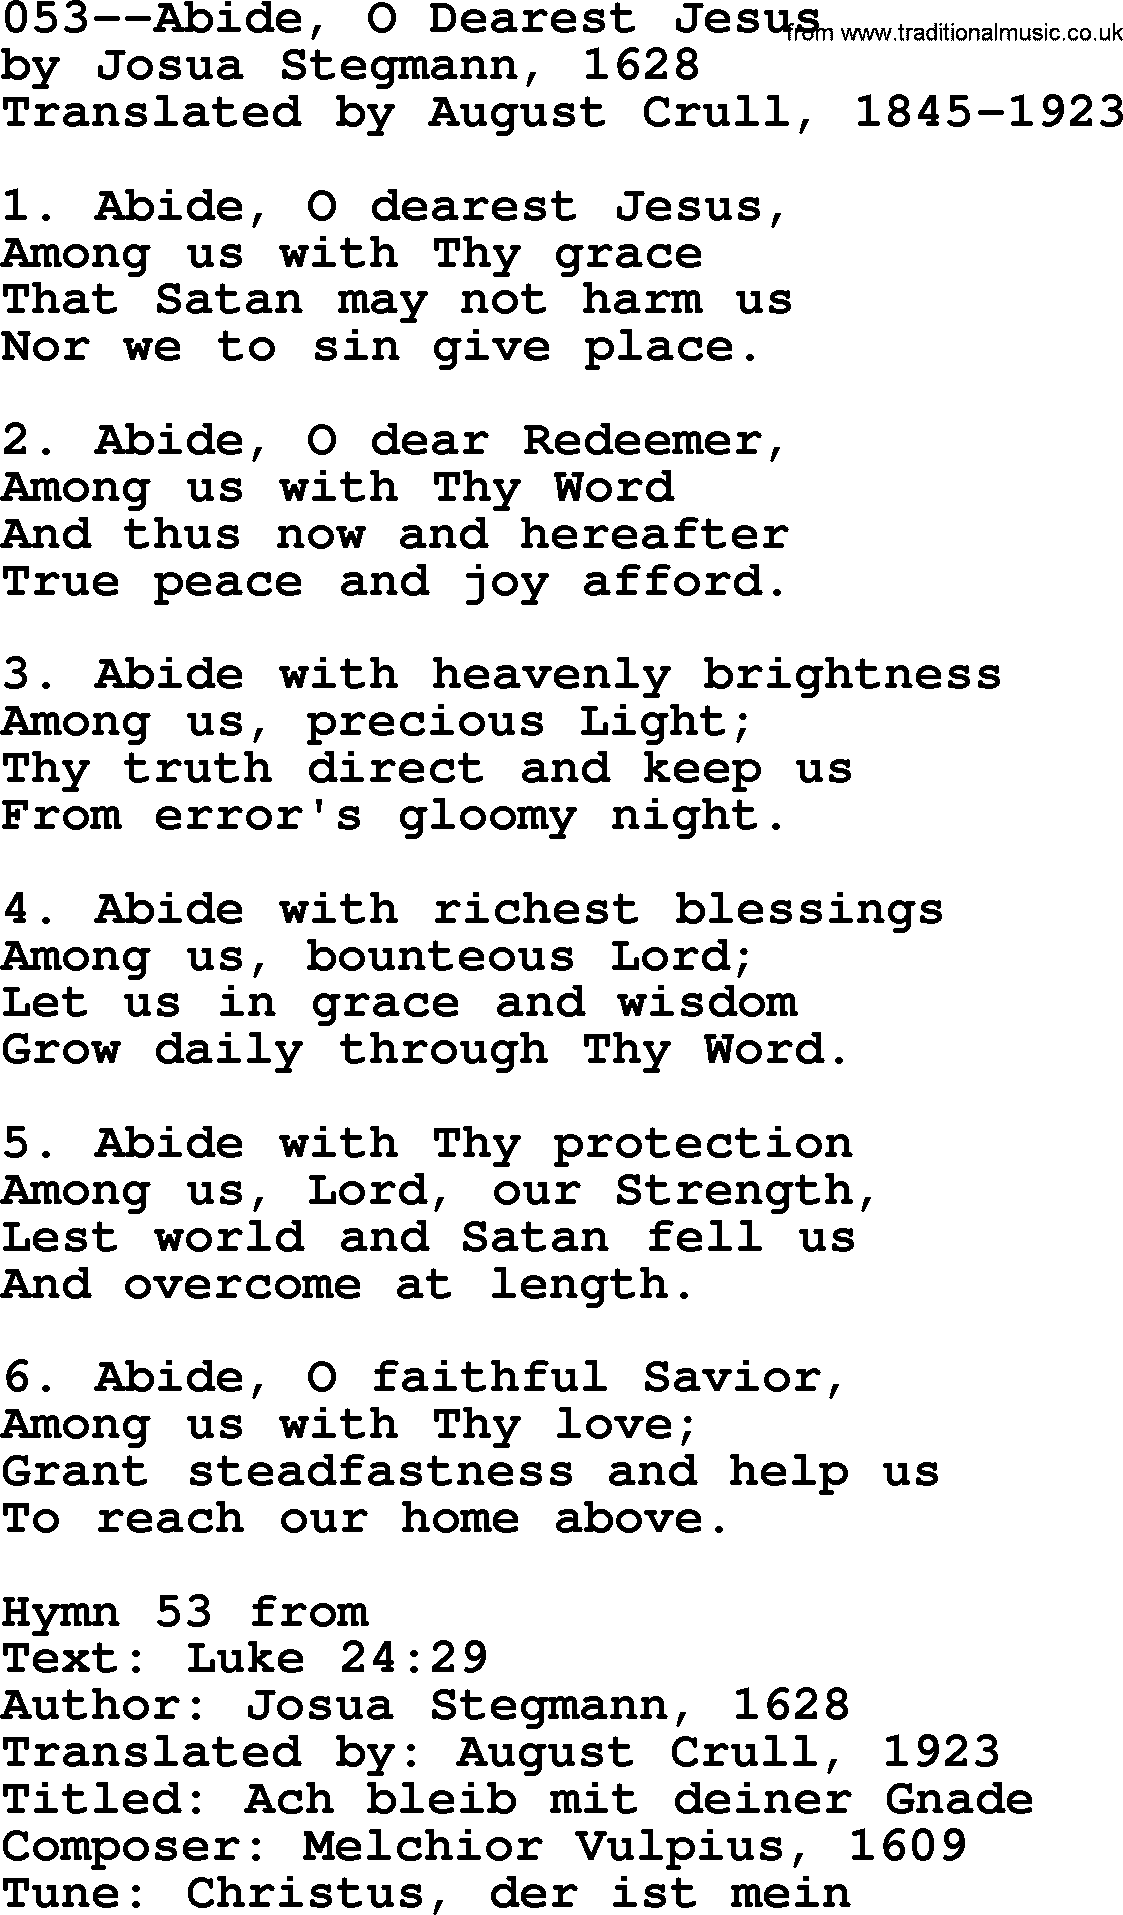 Lutheran Hymn: 053--Abide, O Dearest Jesus.txt lyrics with PDF